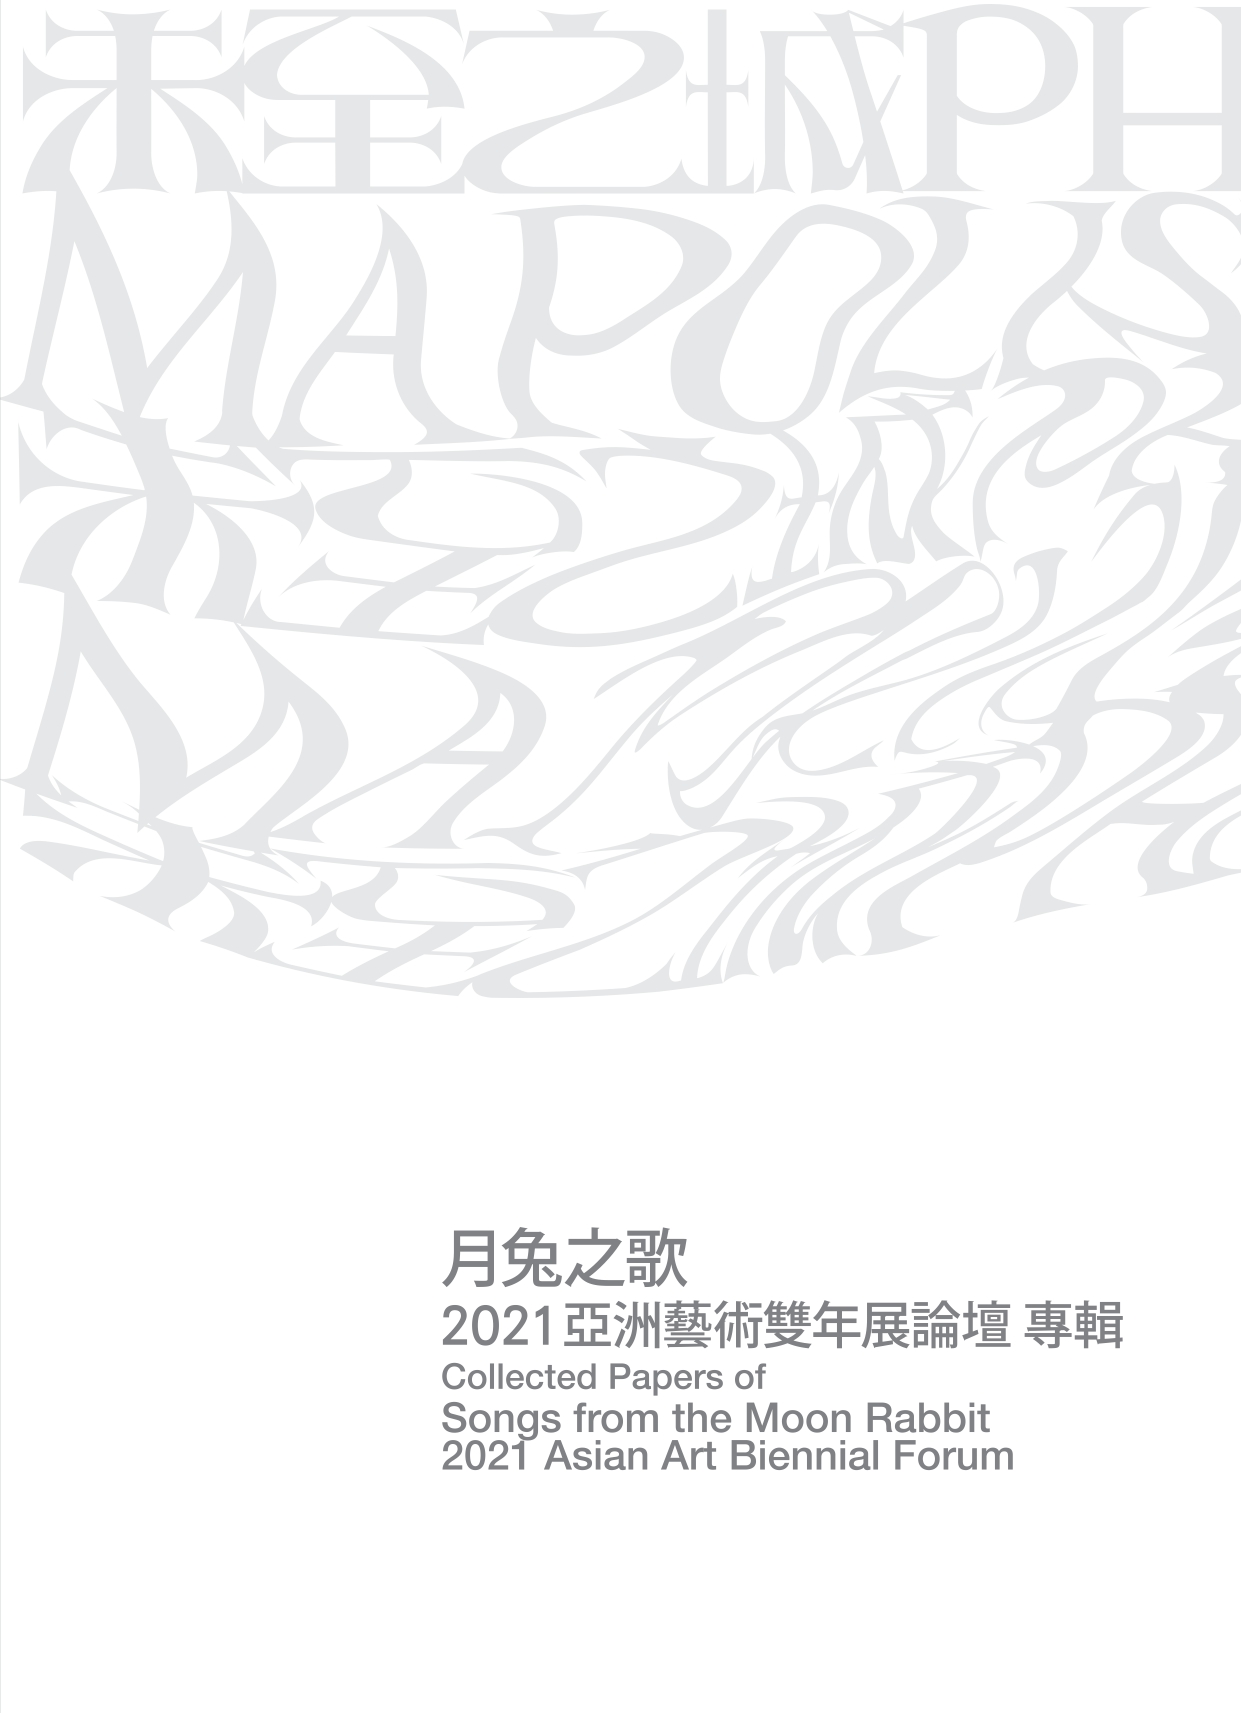 月兔之歌: 2021亞洲藝術雙年展論壇專輯